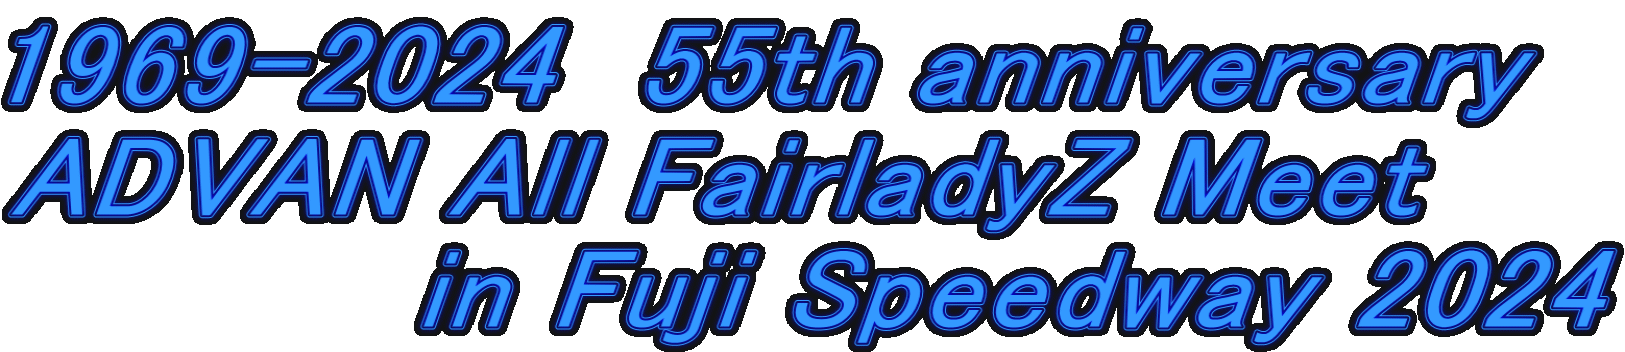 1969-2024 55th anniversary ADVAN All FairladyZ Meet in Fuji Speedway 2024